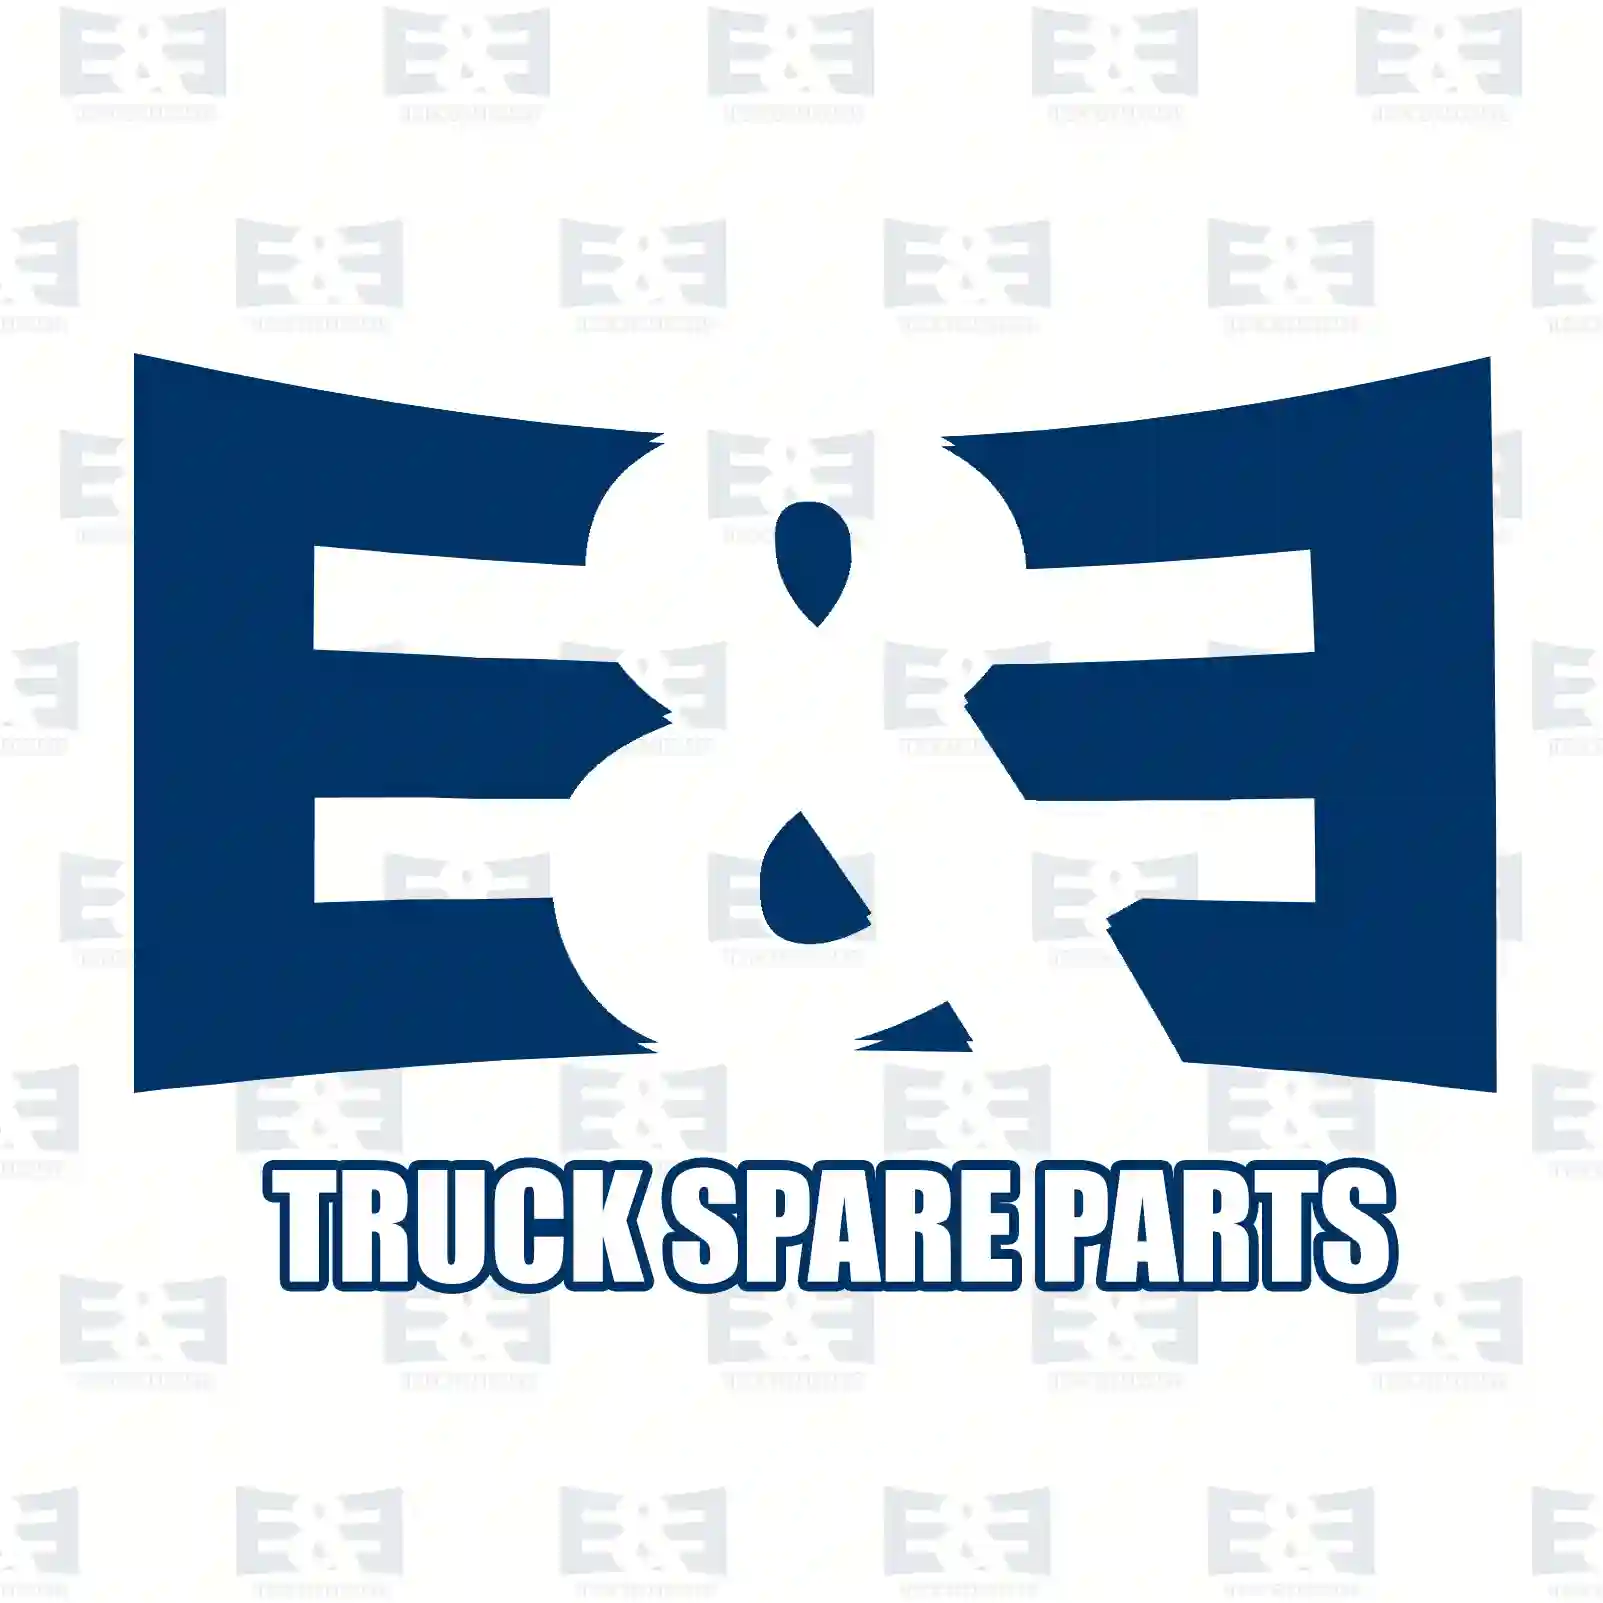 Propeller shaft, 2E2276873, 7401067728, 10677 ||  2E2276873 E&E Truck Spare Parts | Truck Spare Parts, Auotomotive Spare Parts Propeller shaft, 2E2276873, 7401067728, 10677 ||  2E2276873 E&E Truck Spare Parts | Truck Spare Parts, Auotomotive Spare Parts